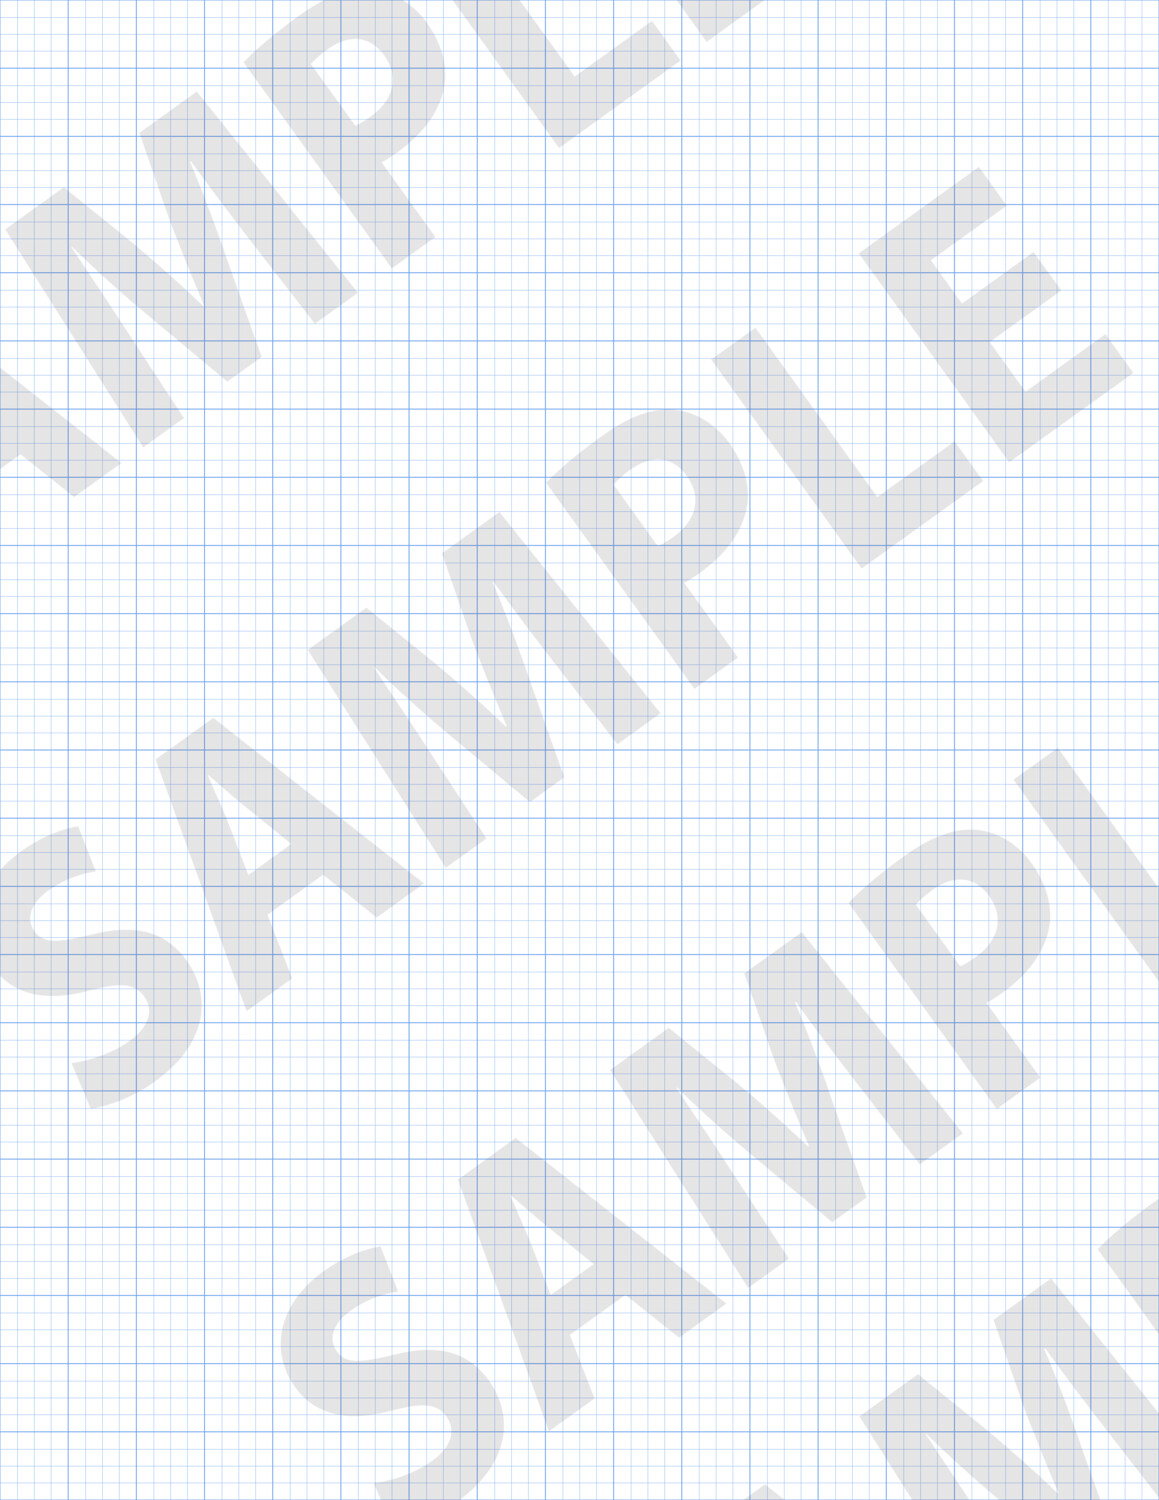 Blue 1 - Medium Grid Paper